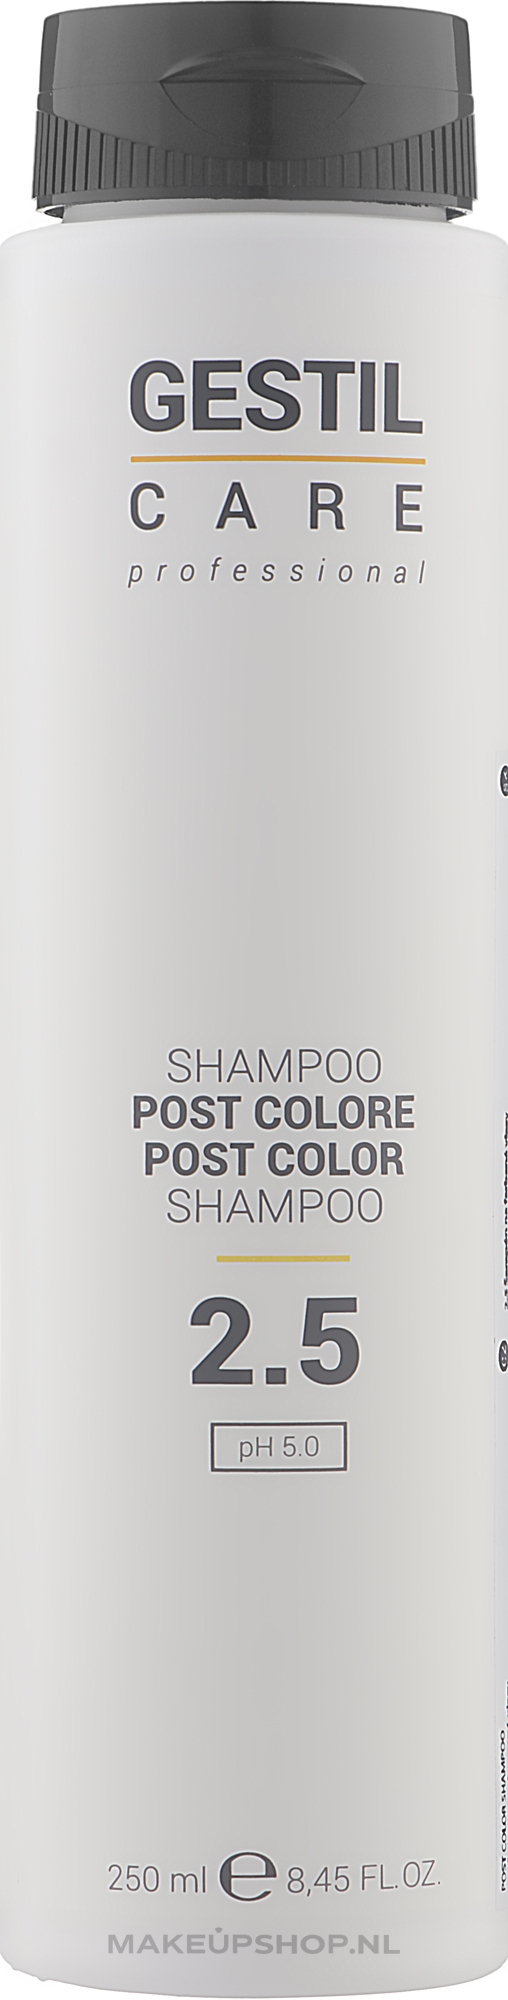 szampon gestil hair care